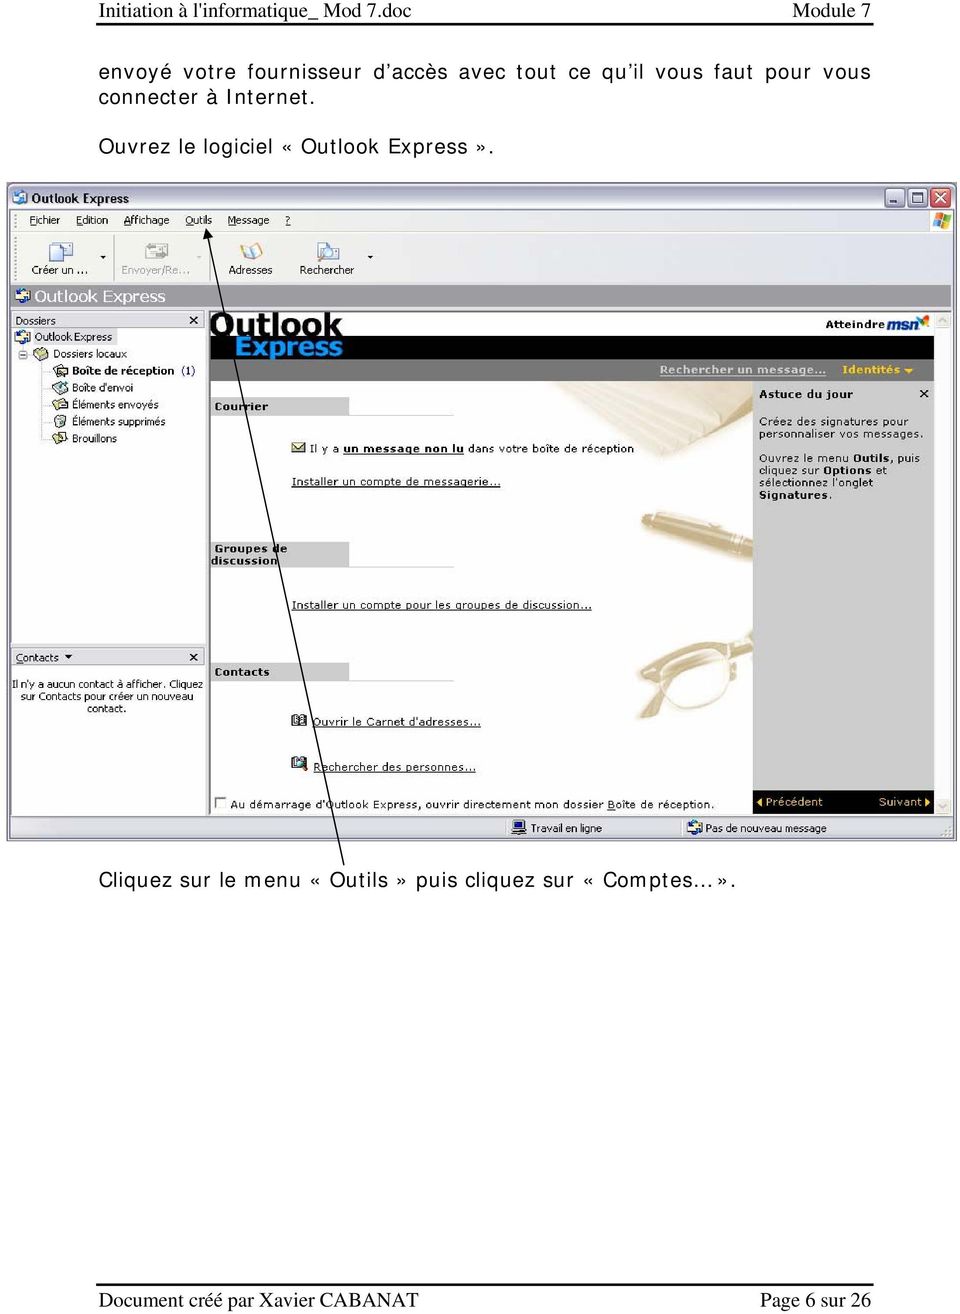 Ouvrez le logiciel «Outlook Express».